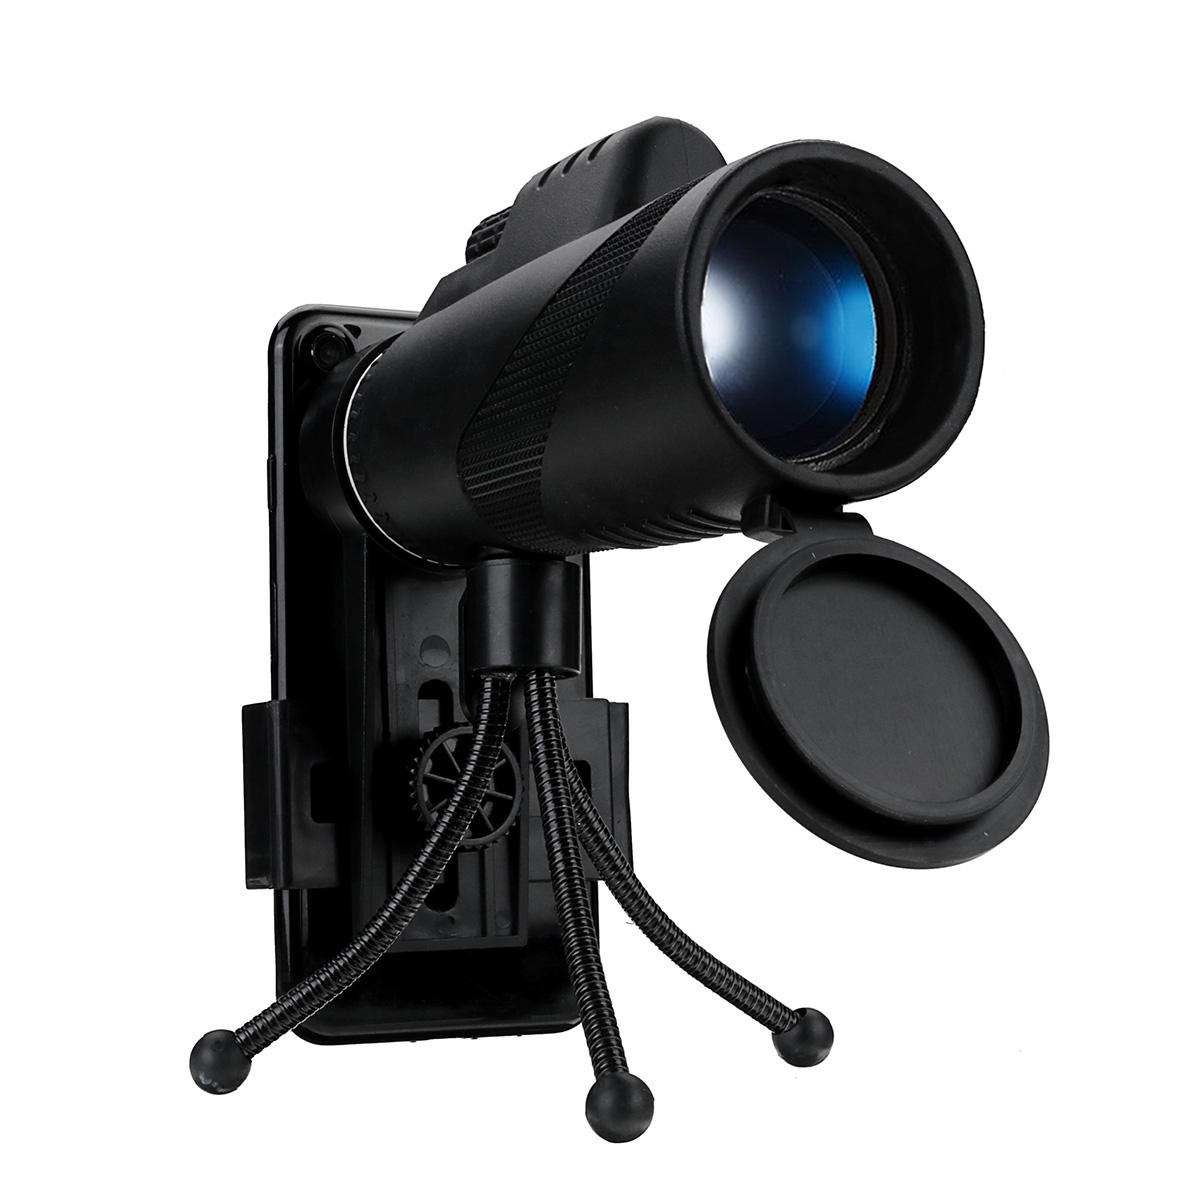 Teleskop monokular z obiektywem optycznym 40X60 BAK4 do biwakowania, nocna wizja HD z klipem na telefon i statywem